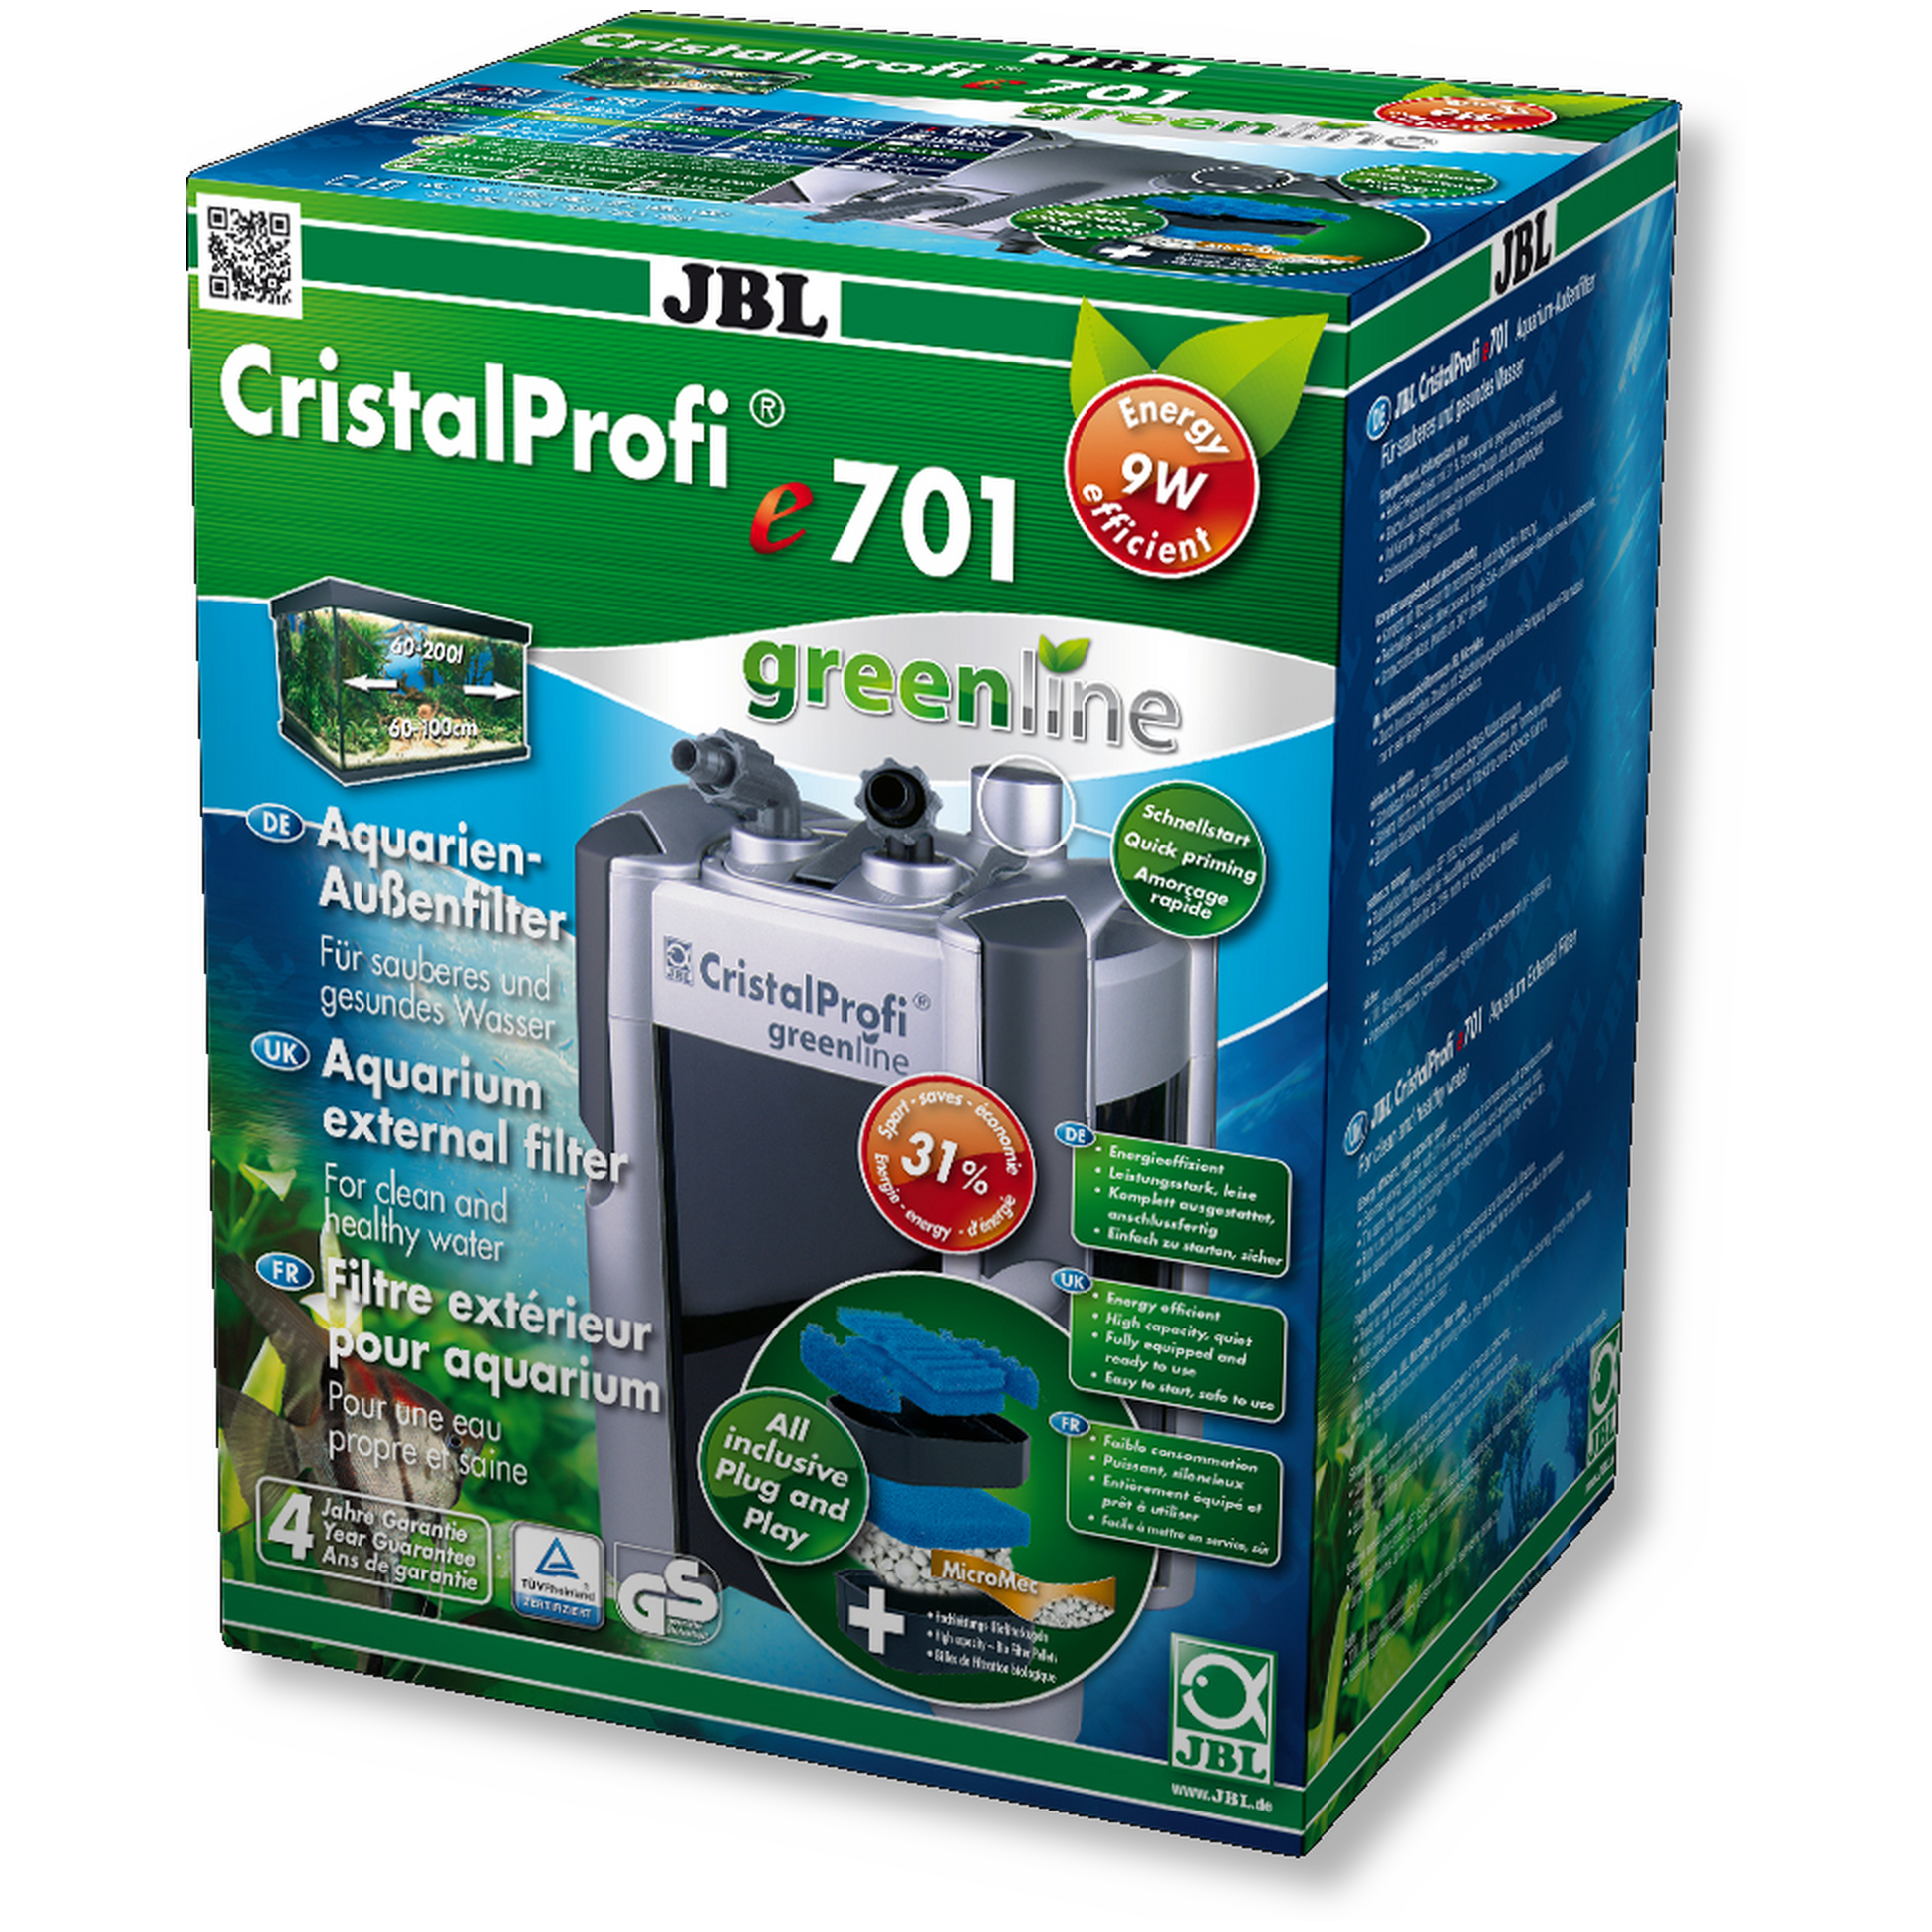 Jbl Cristalprofi E701 Greenline